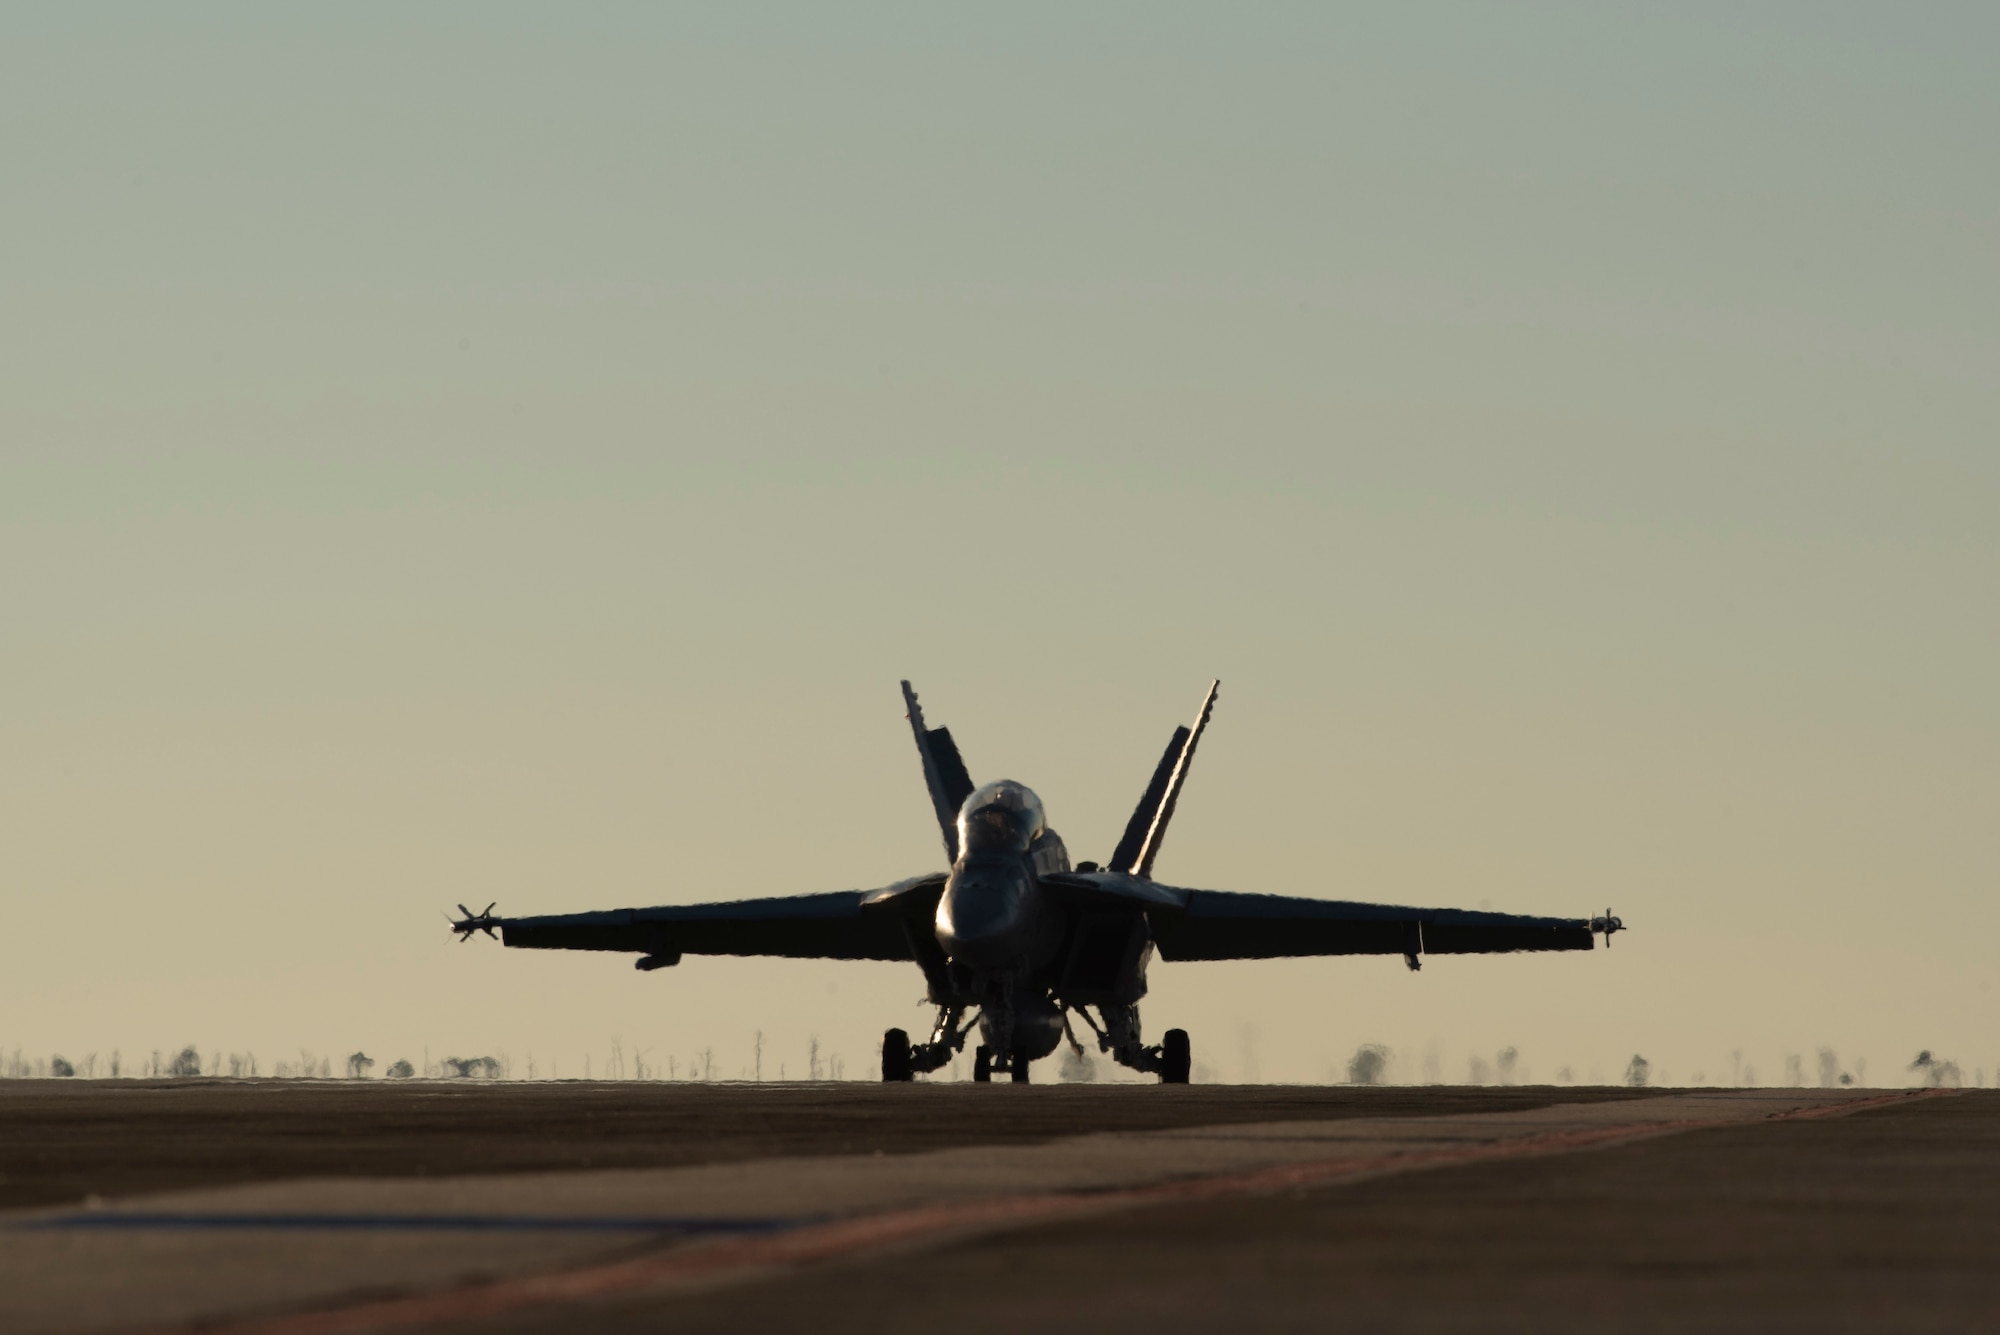 Navy F/A-18 Super Hornet